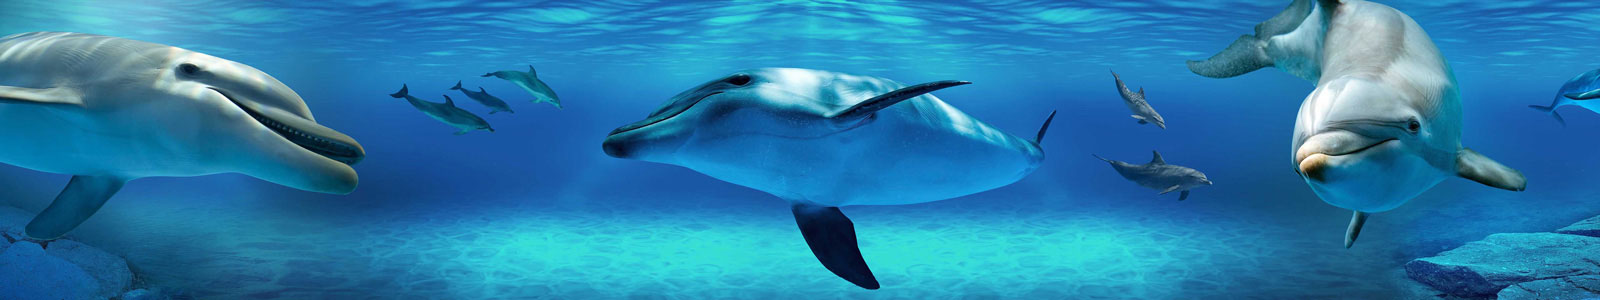 №6295 - Дельфины под водой